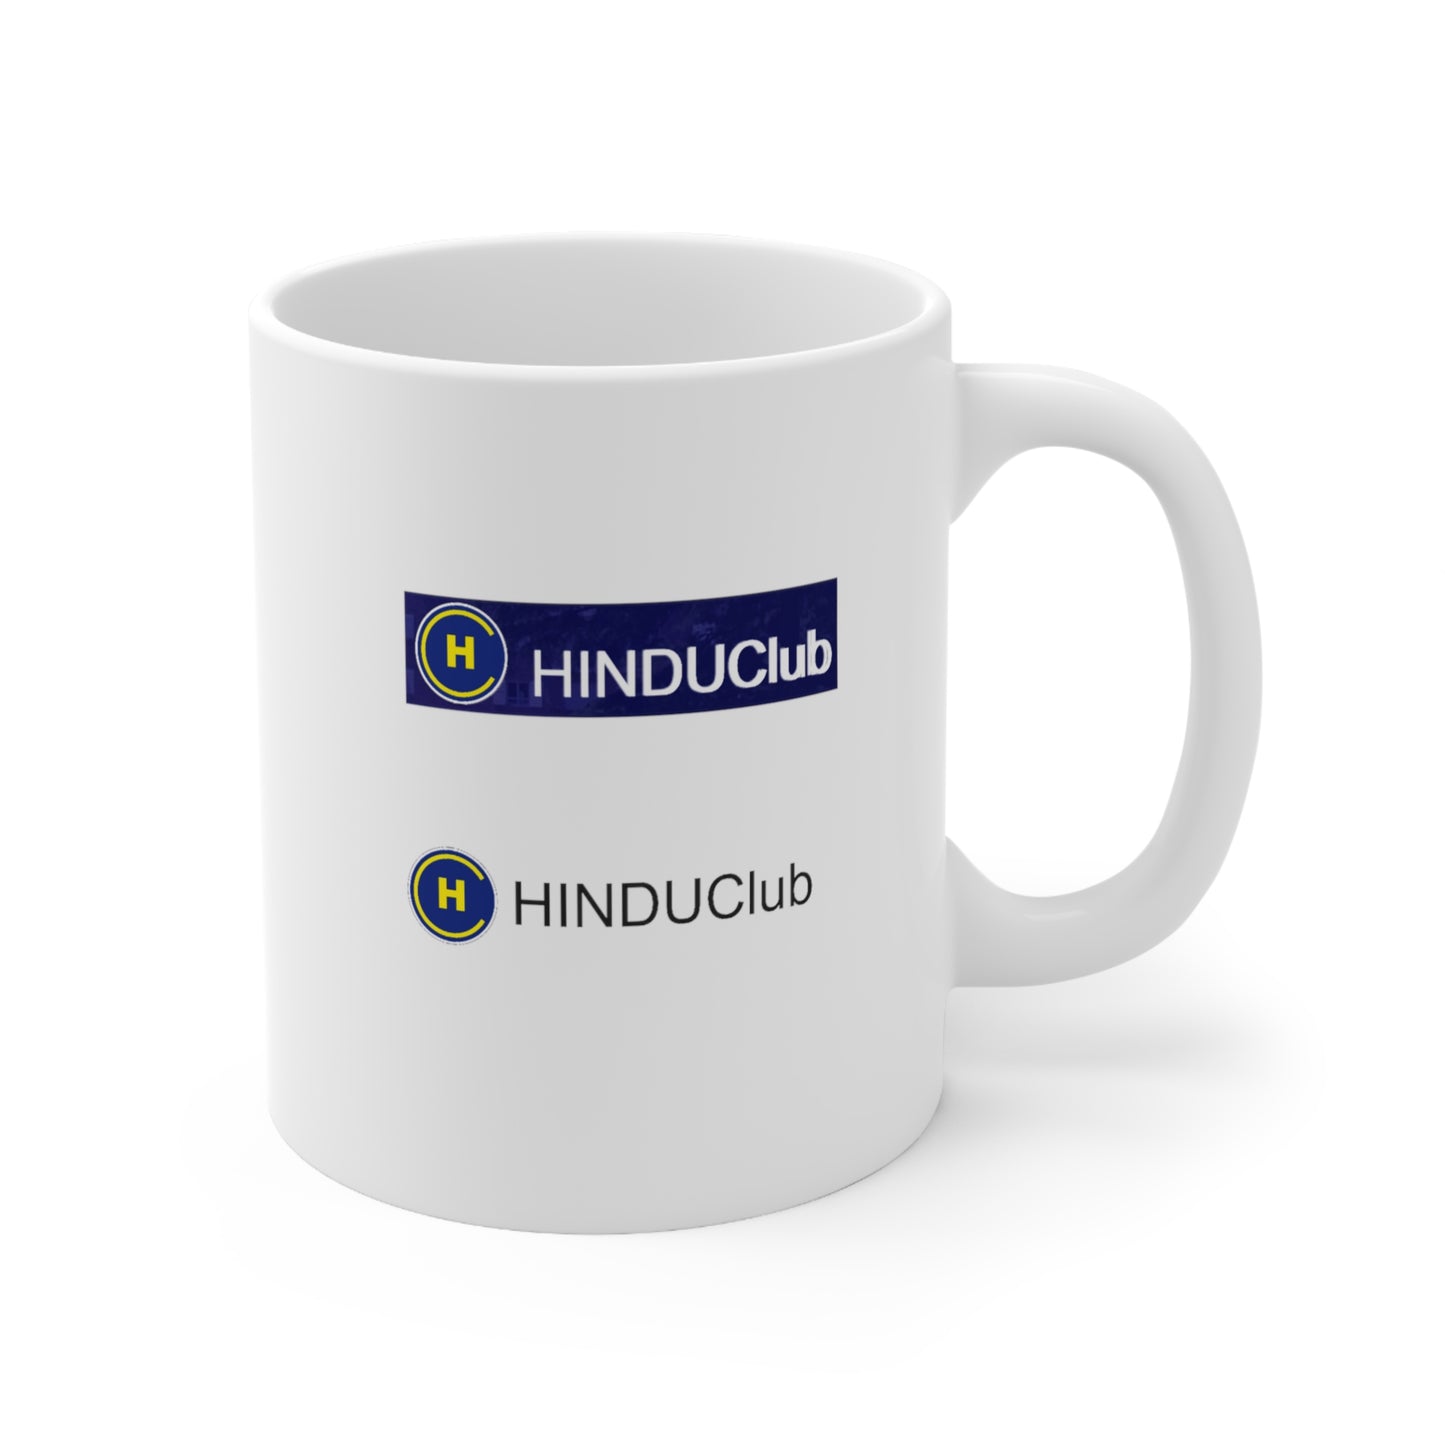 Hindu Club Ceramic Mug